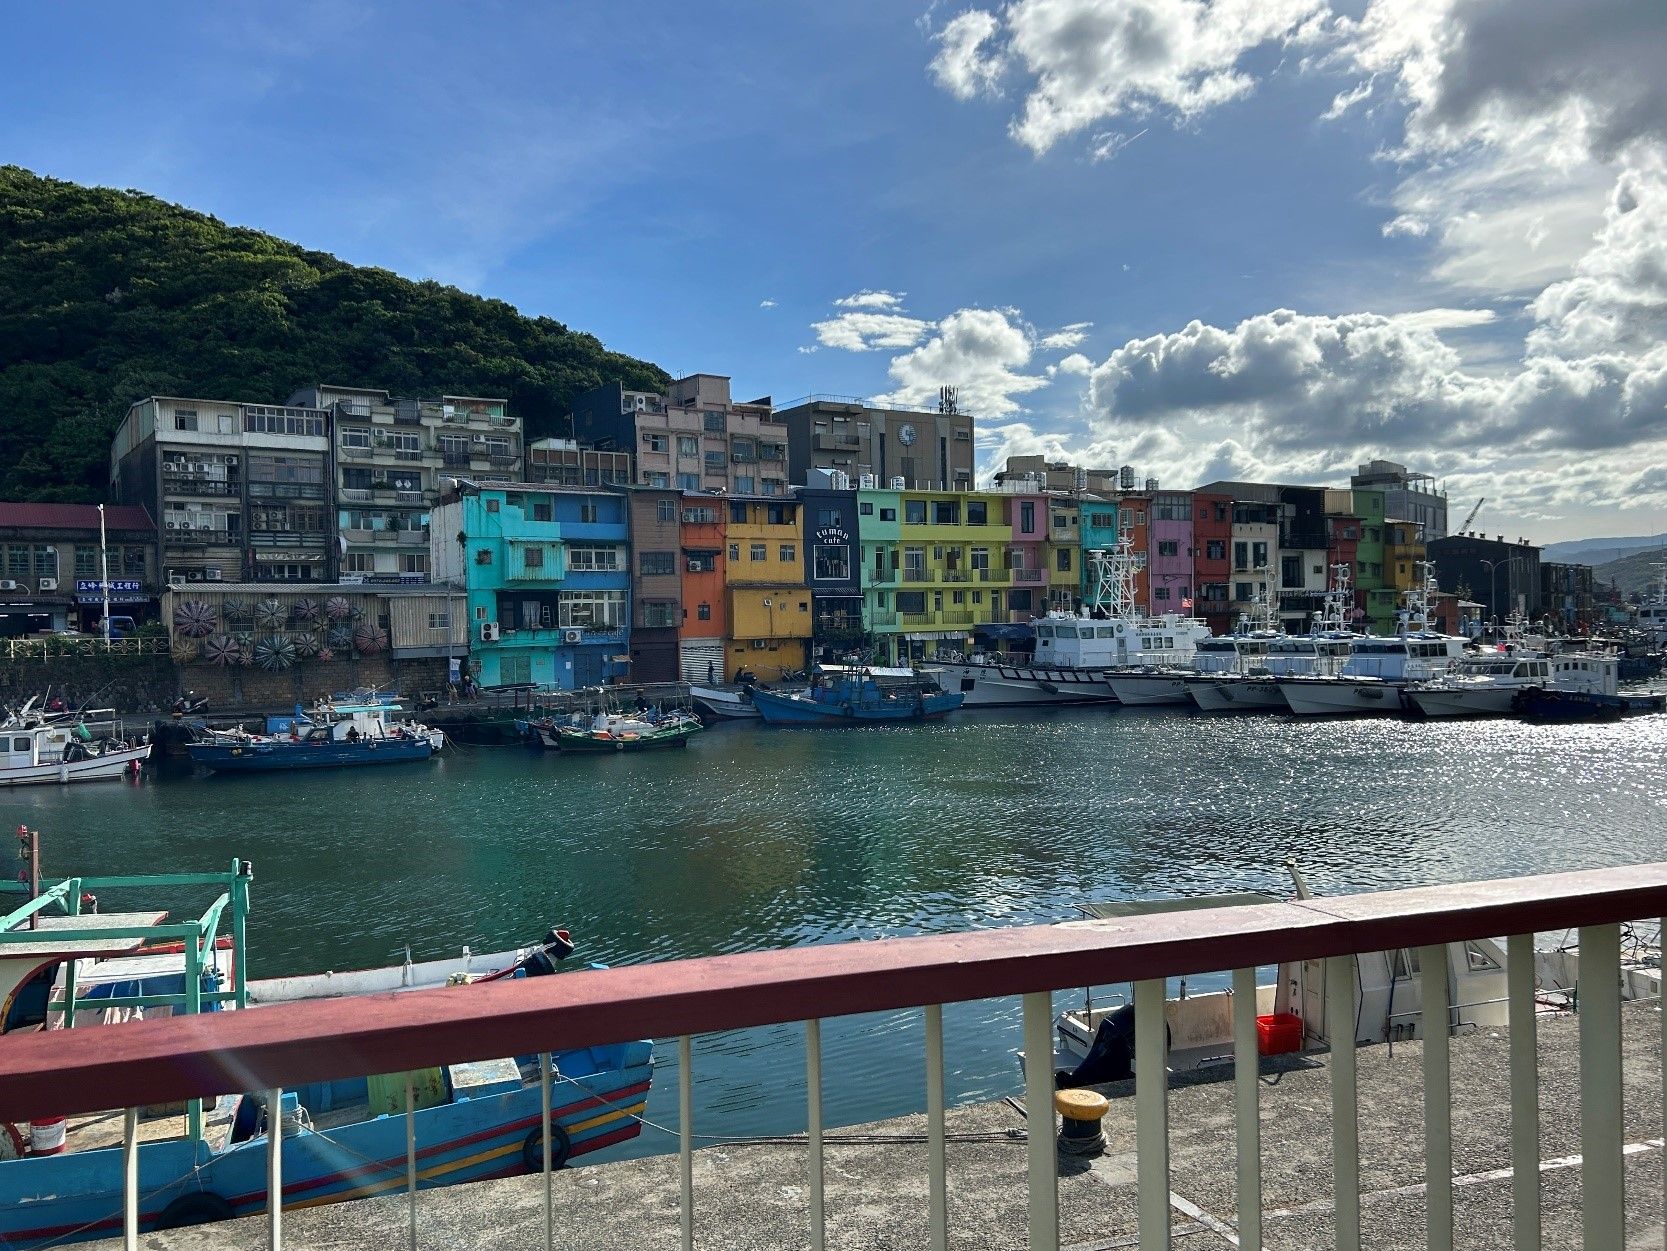 和平島商圈結合了正濱漁港及和平島公園周邊店家，擁有豐富的漁業資源和鮮活水產，獨特的海港城市魅力。